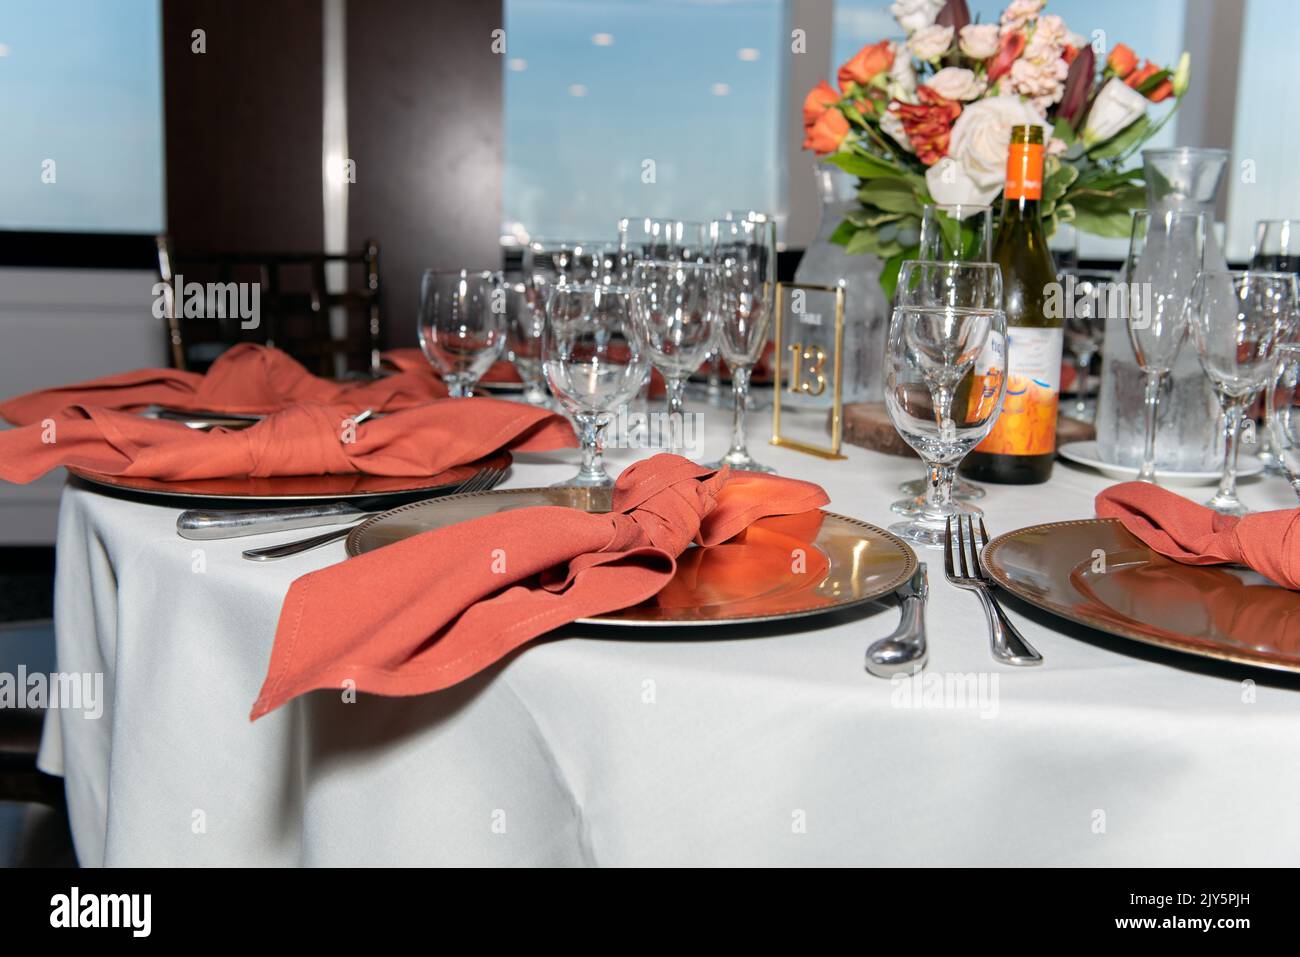 Der Empfangsort nach der Hochzeitszeremonie verfügt über elegante Räumlichkeiten an jedem Tisch für die Gäste. Stockfoto